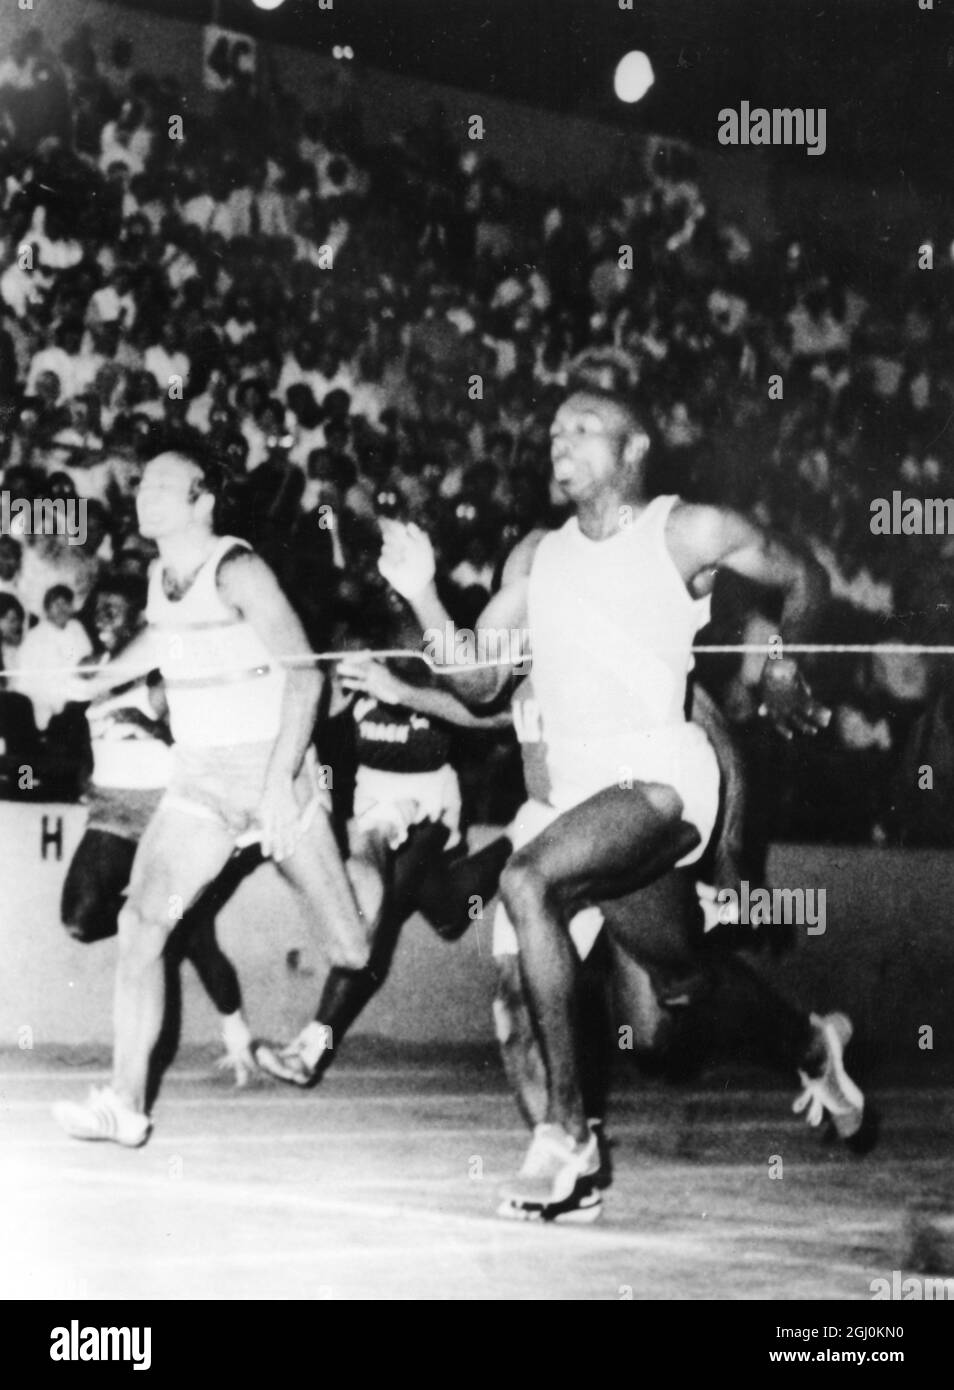 Jim Hines aus Houston (rechts) überquert die Ziellinie in einem 100 Meter langen Halbfinale in einer Weltrekordzeit von 9.9 Sekunden. Der zweite ist Ronnie Ray Smith. AZU Leichtathletik-Meisterschaften , Sacramento , Kalifornien 21. Juni 1968 Stockfoto